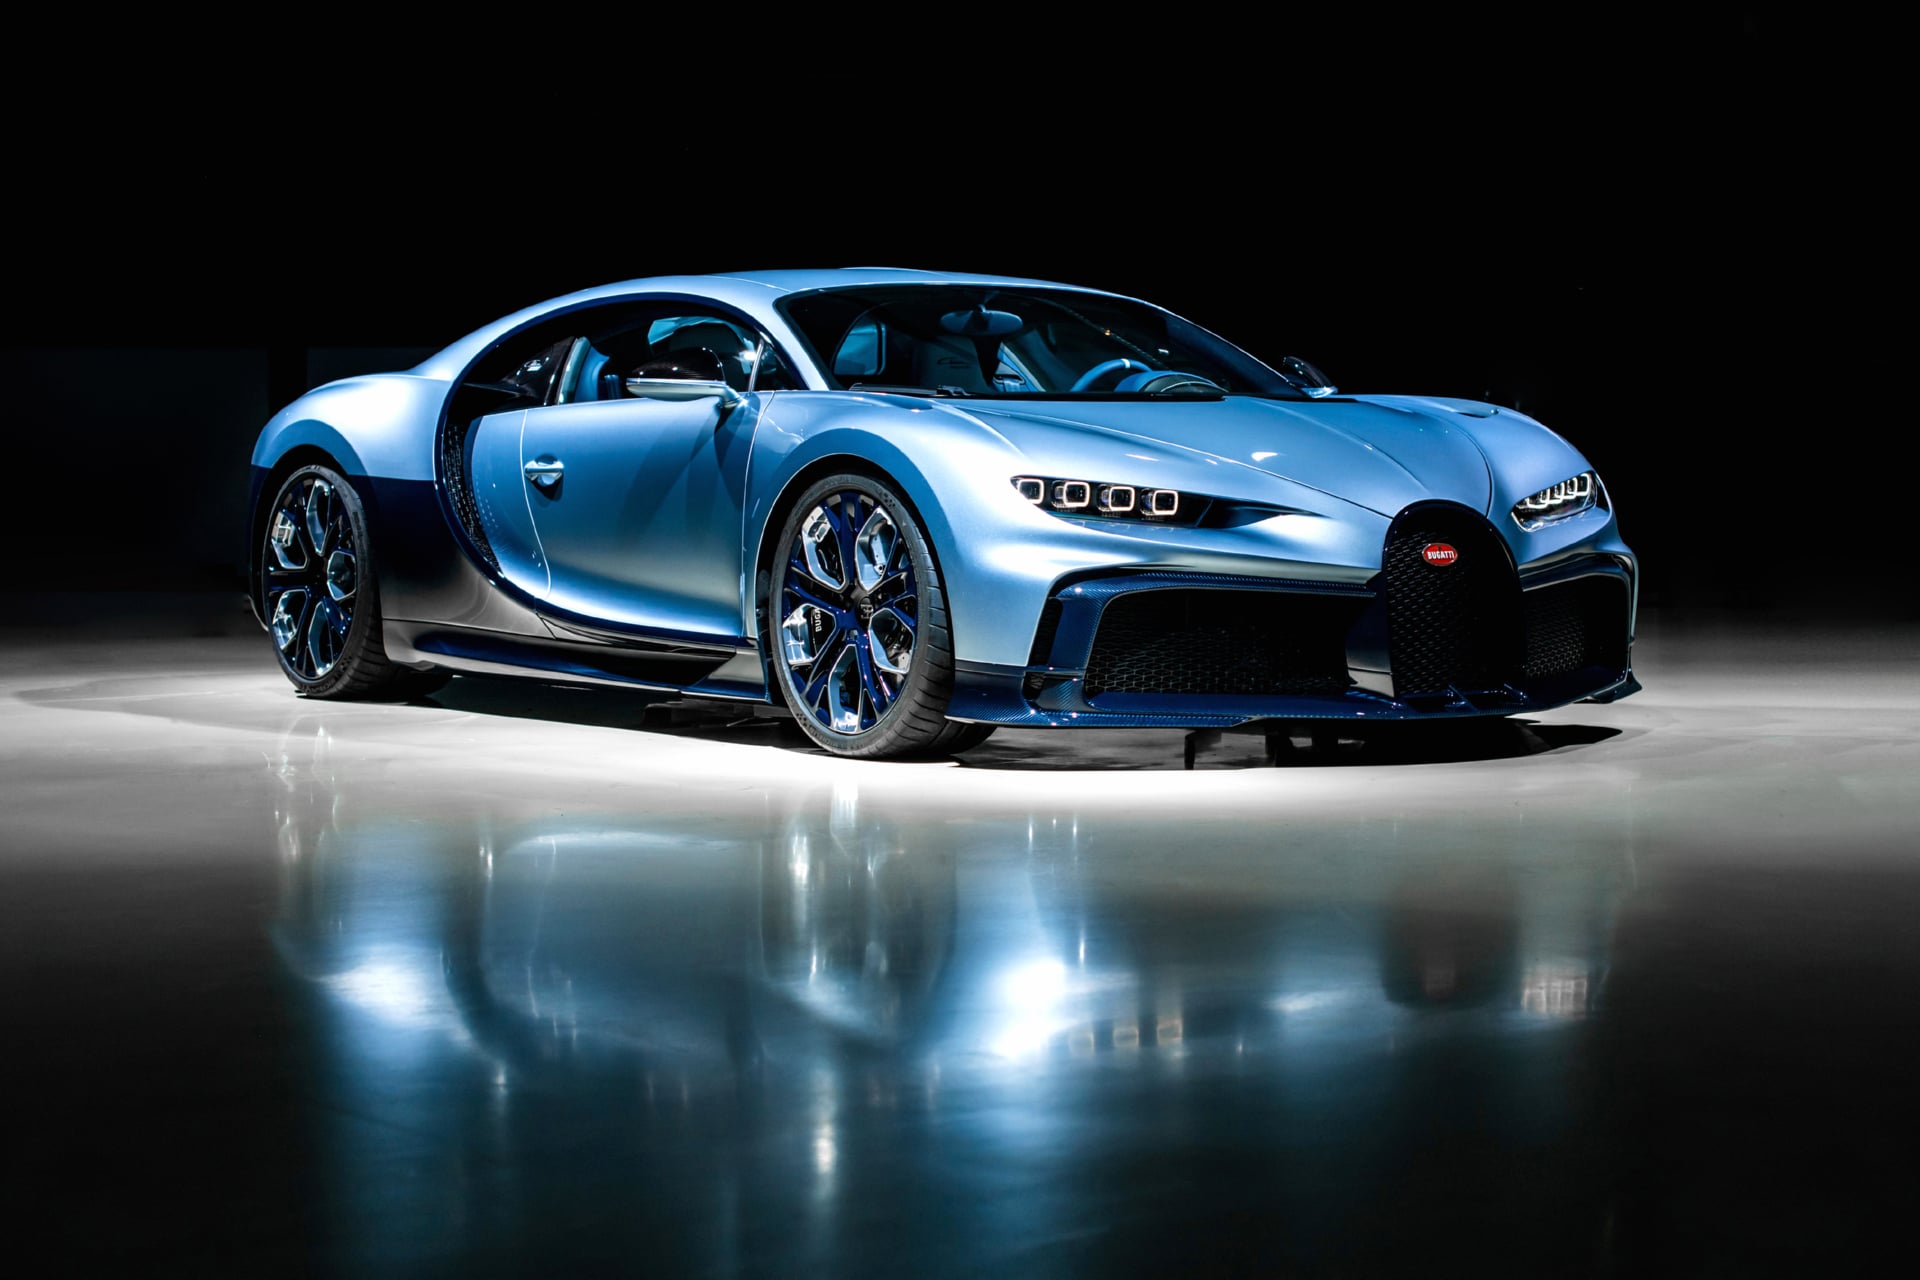 Bugatti Chiron Profilee at 1024 x 768 size wallpapers HD quality